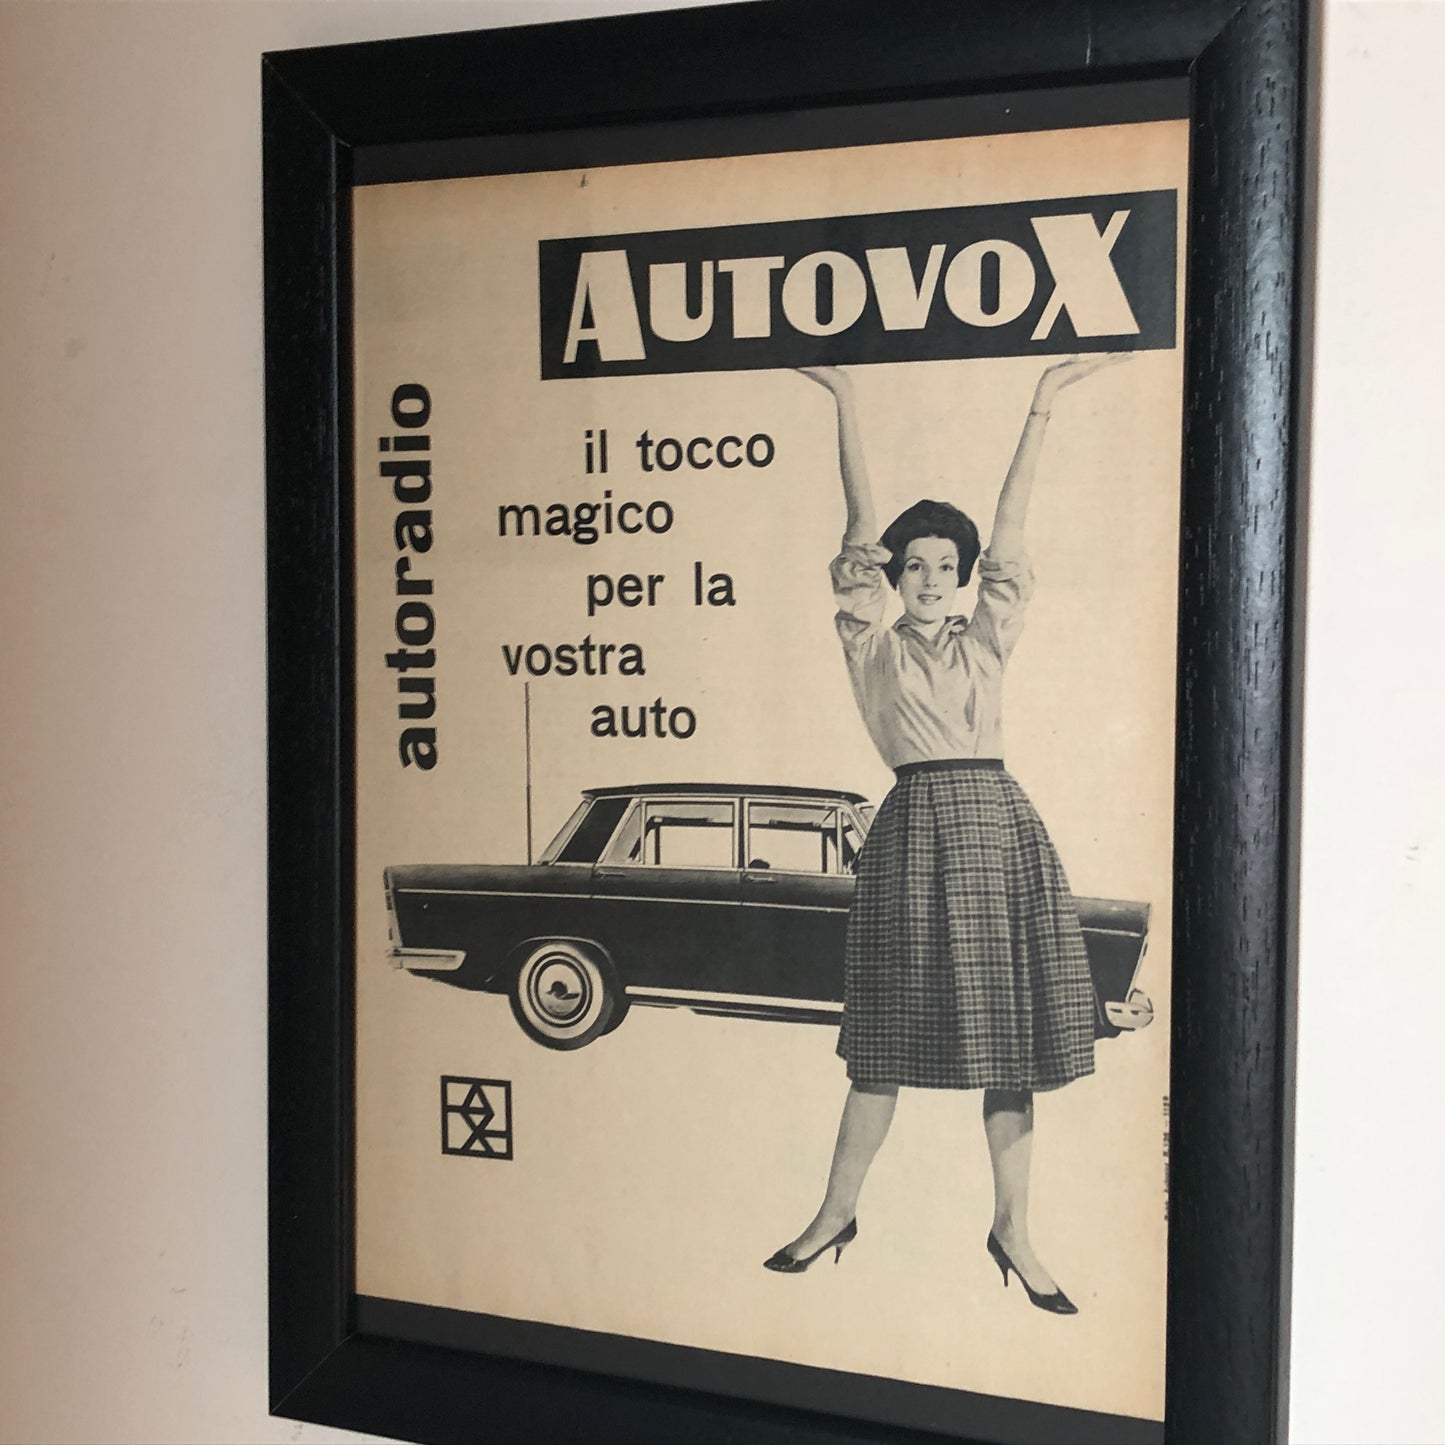 Autovox, Pubblicità Anno 1960 Autoradio Autovox il Tocco Magico per la Vostra Auto